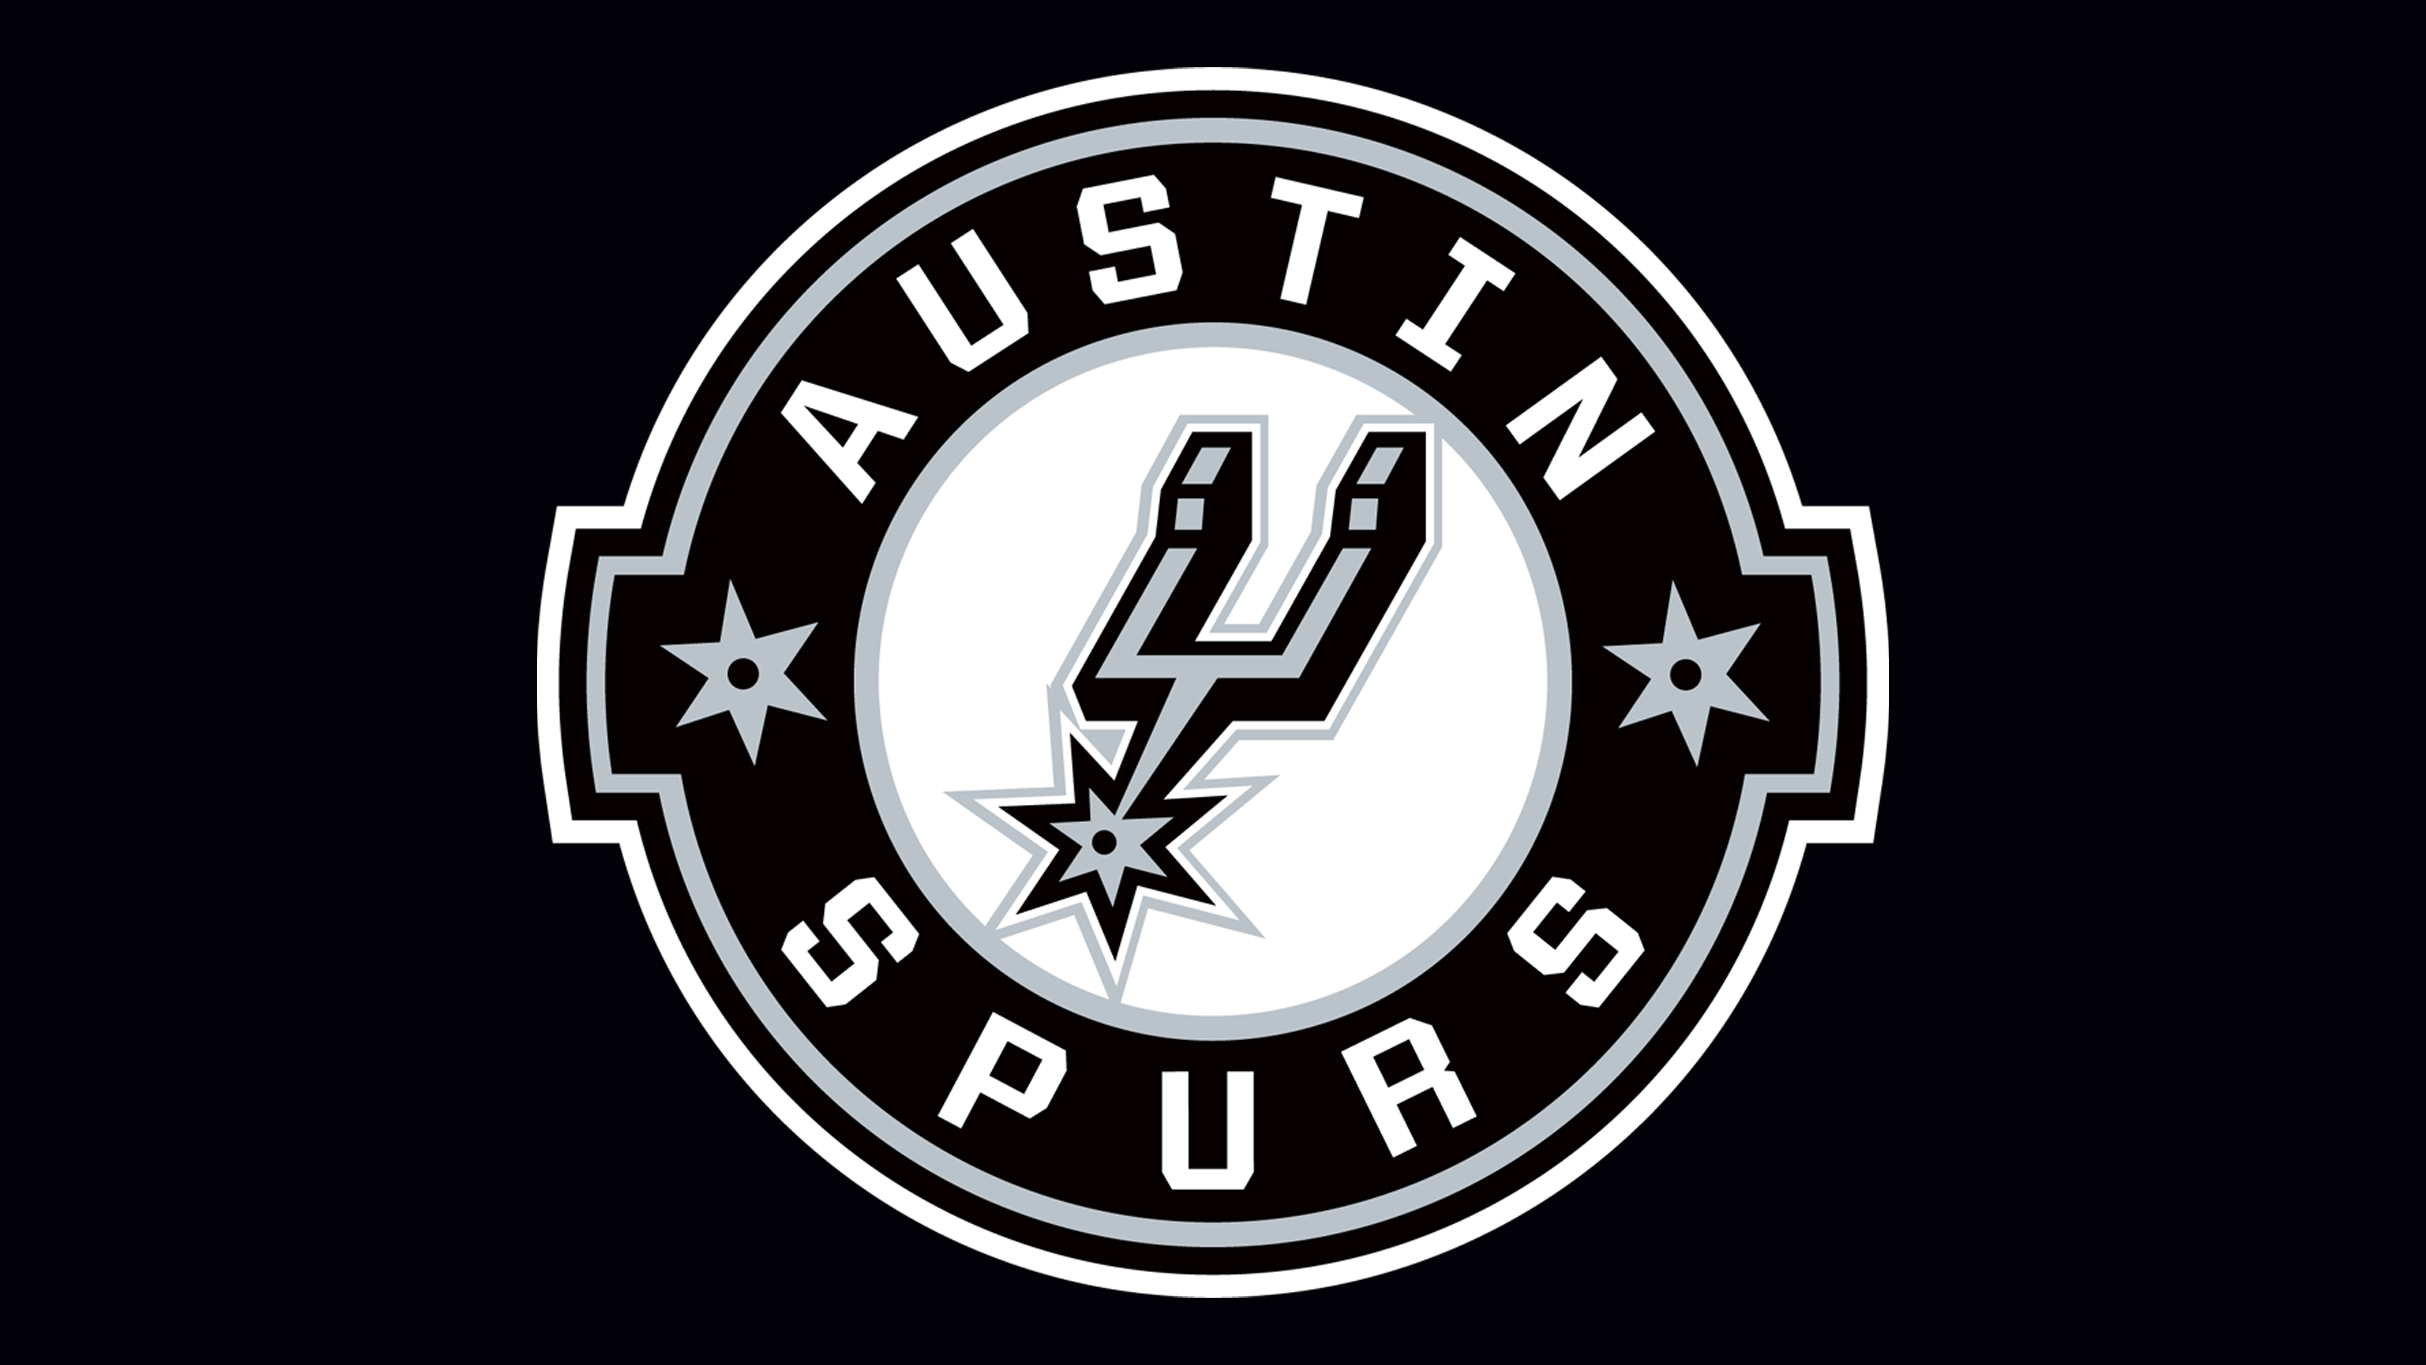 Austin Spurs vs Santa Cruz Warriors in Cedar Park promo photo for Social Media presale offer code